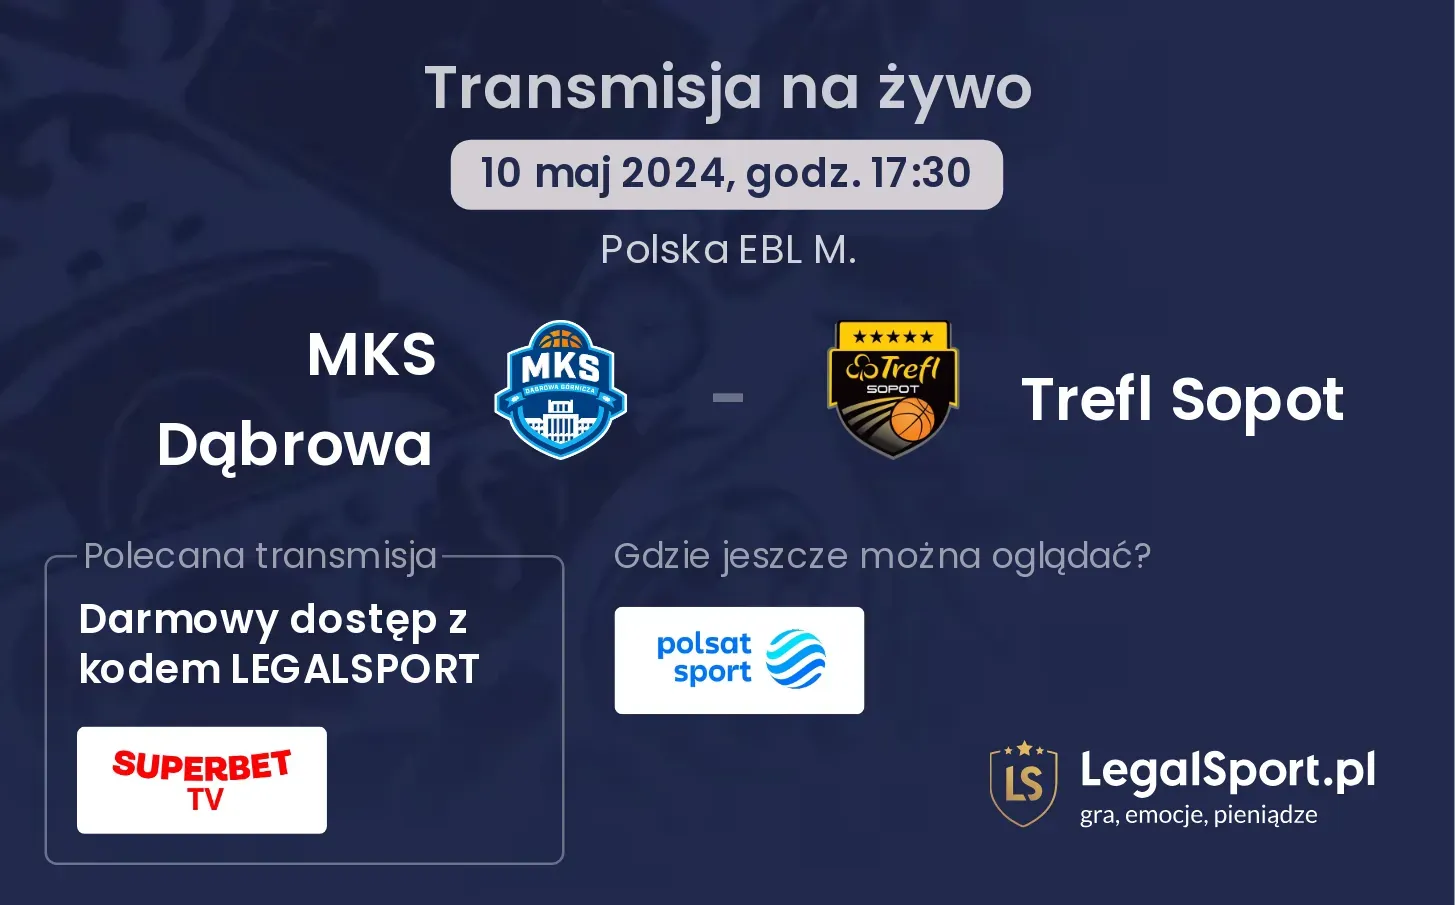 MKS Dąbrowa - Trefl Sopot transmisja na żywo